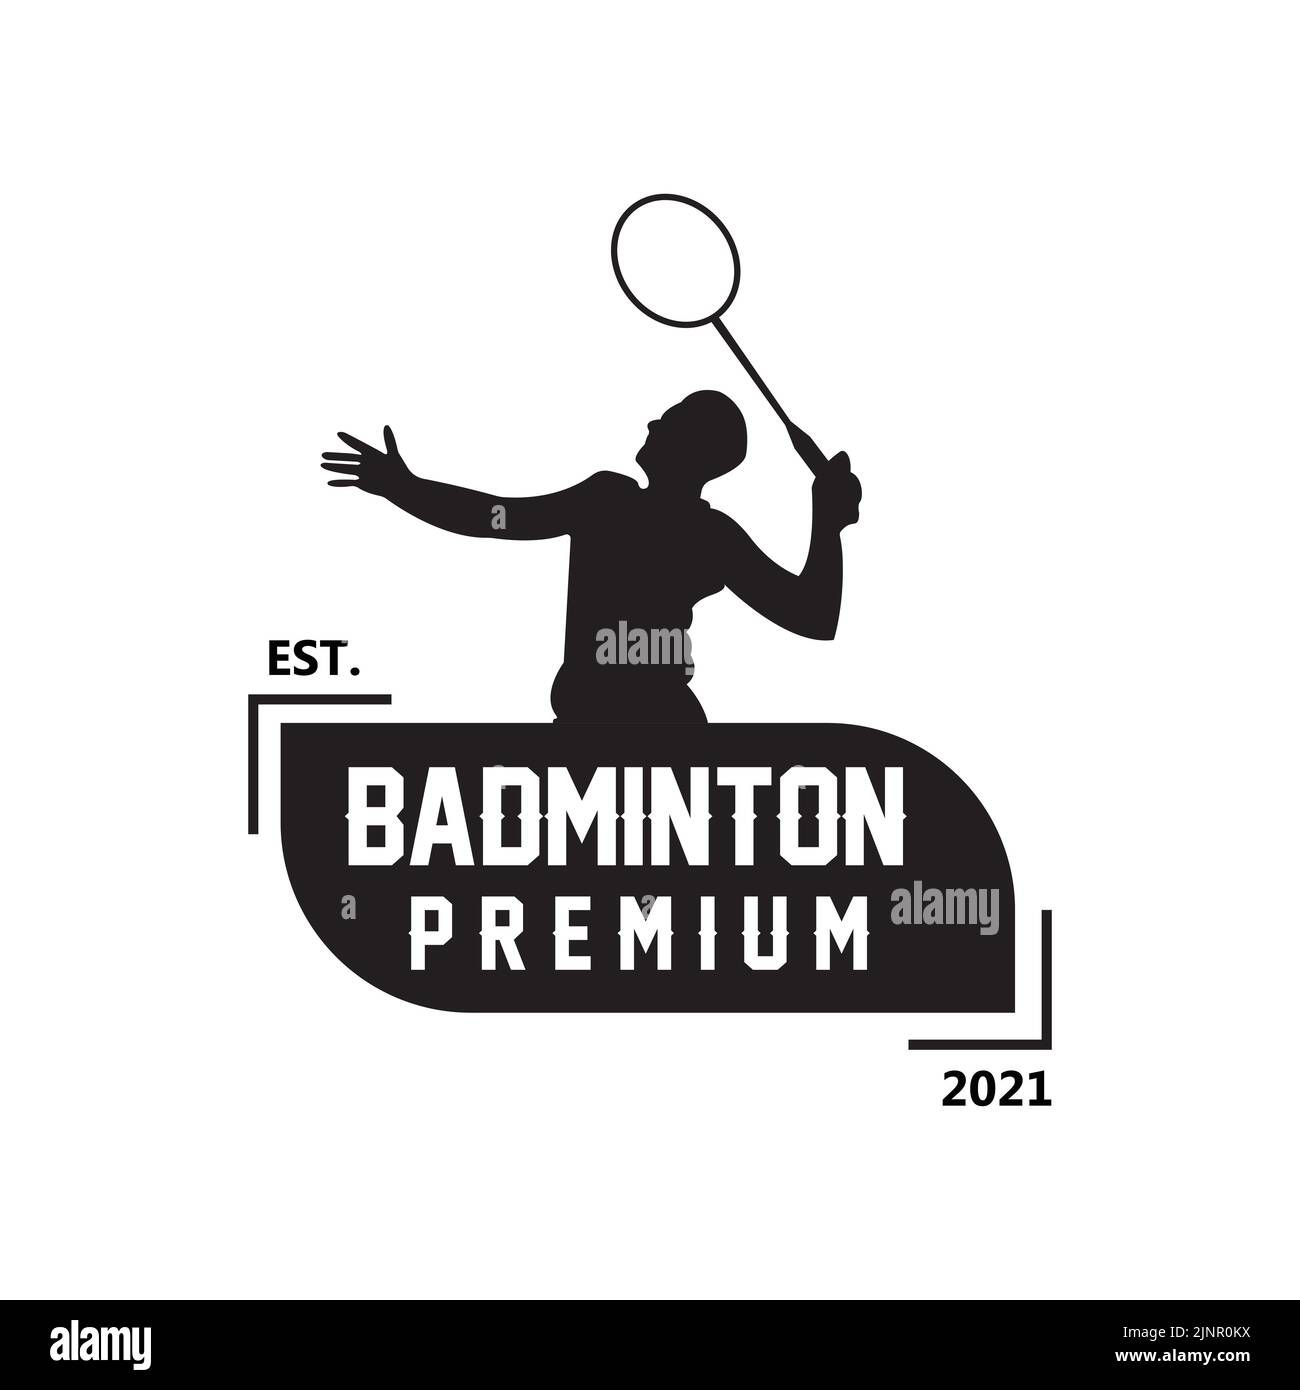 badminton logo icon vector, sports player, using racket, premium retro concept Stock Vector